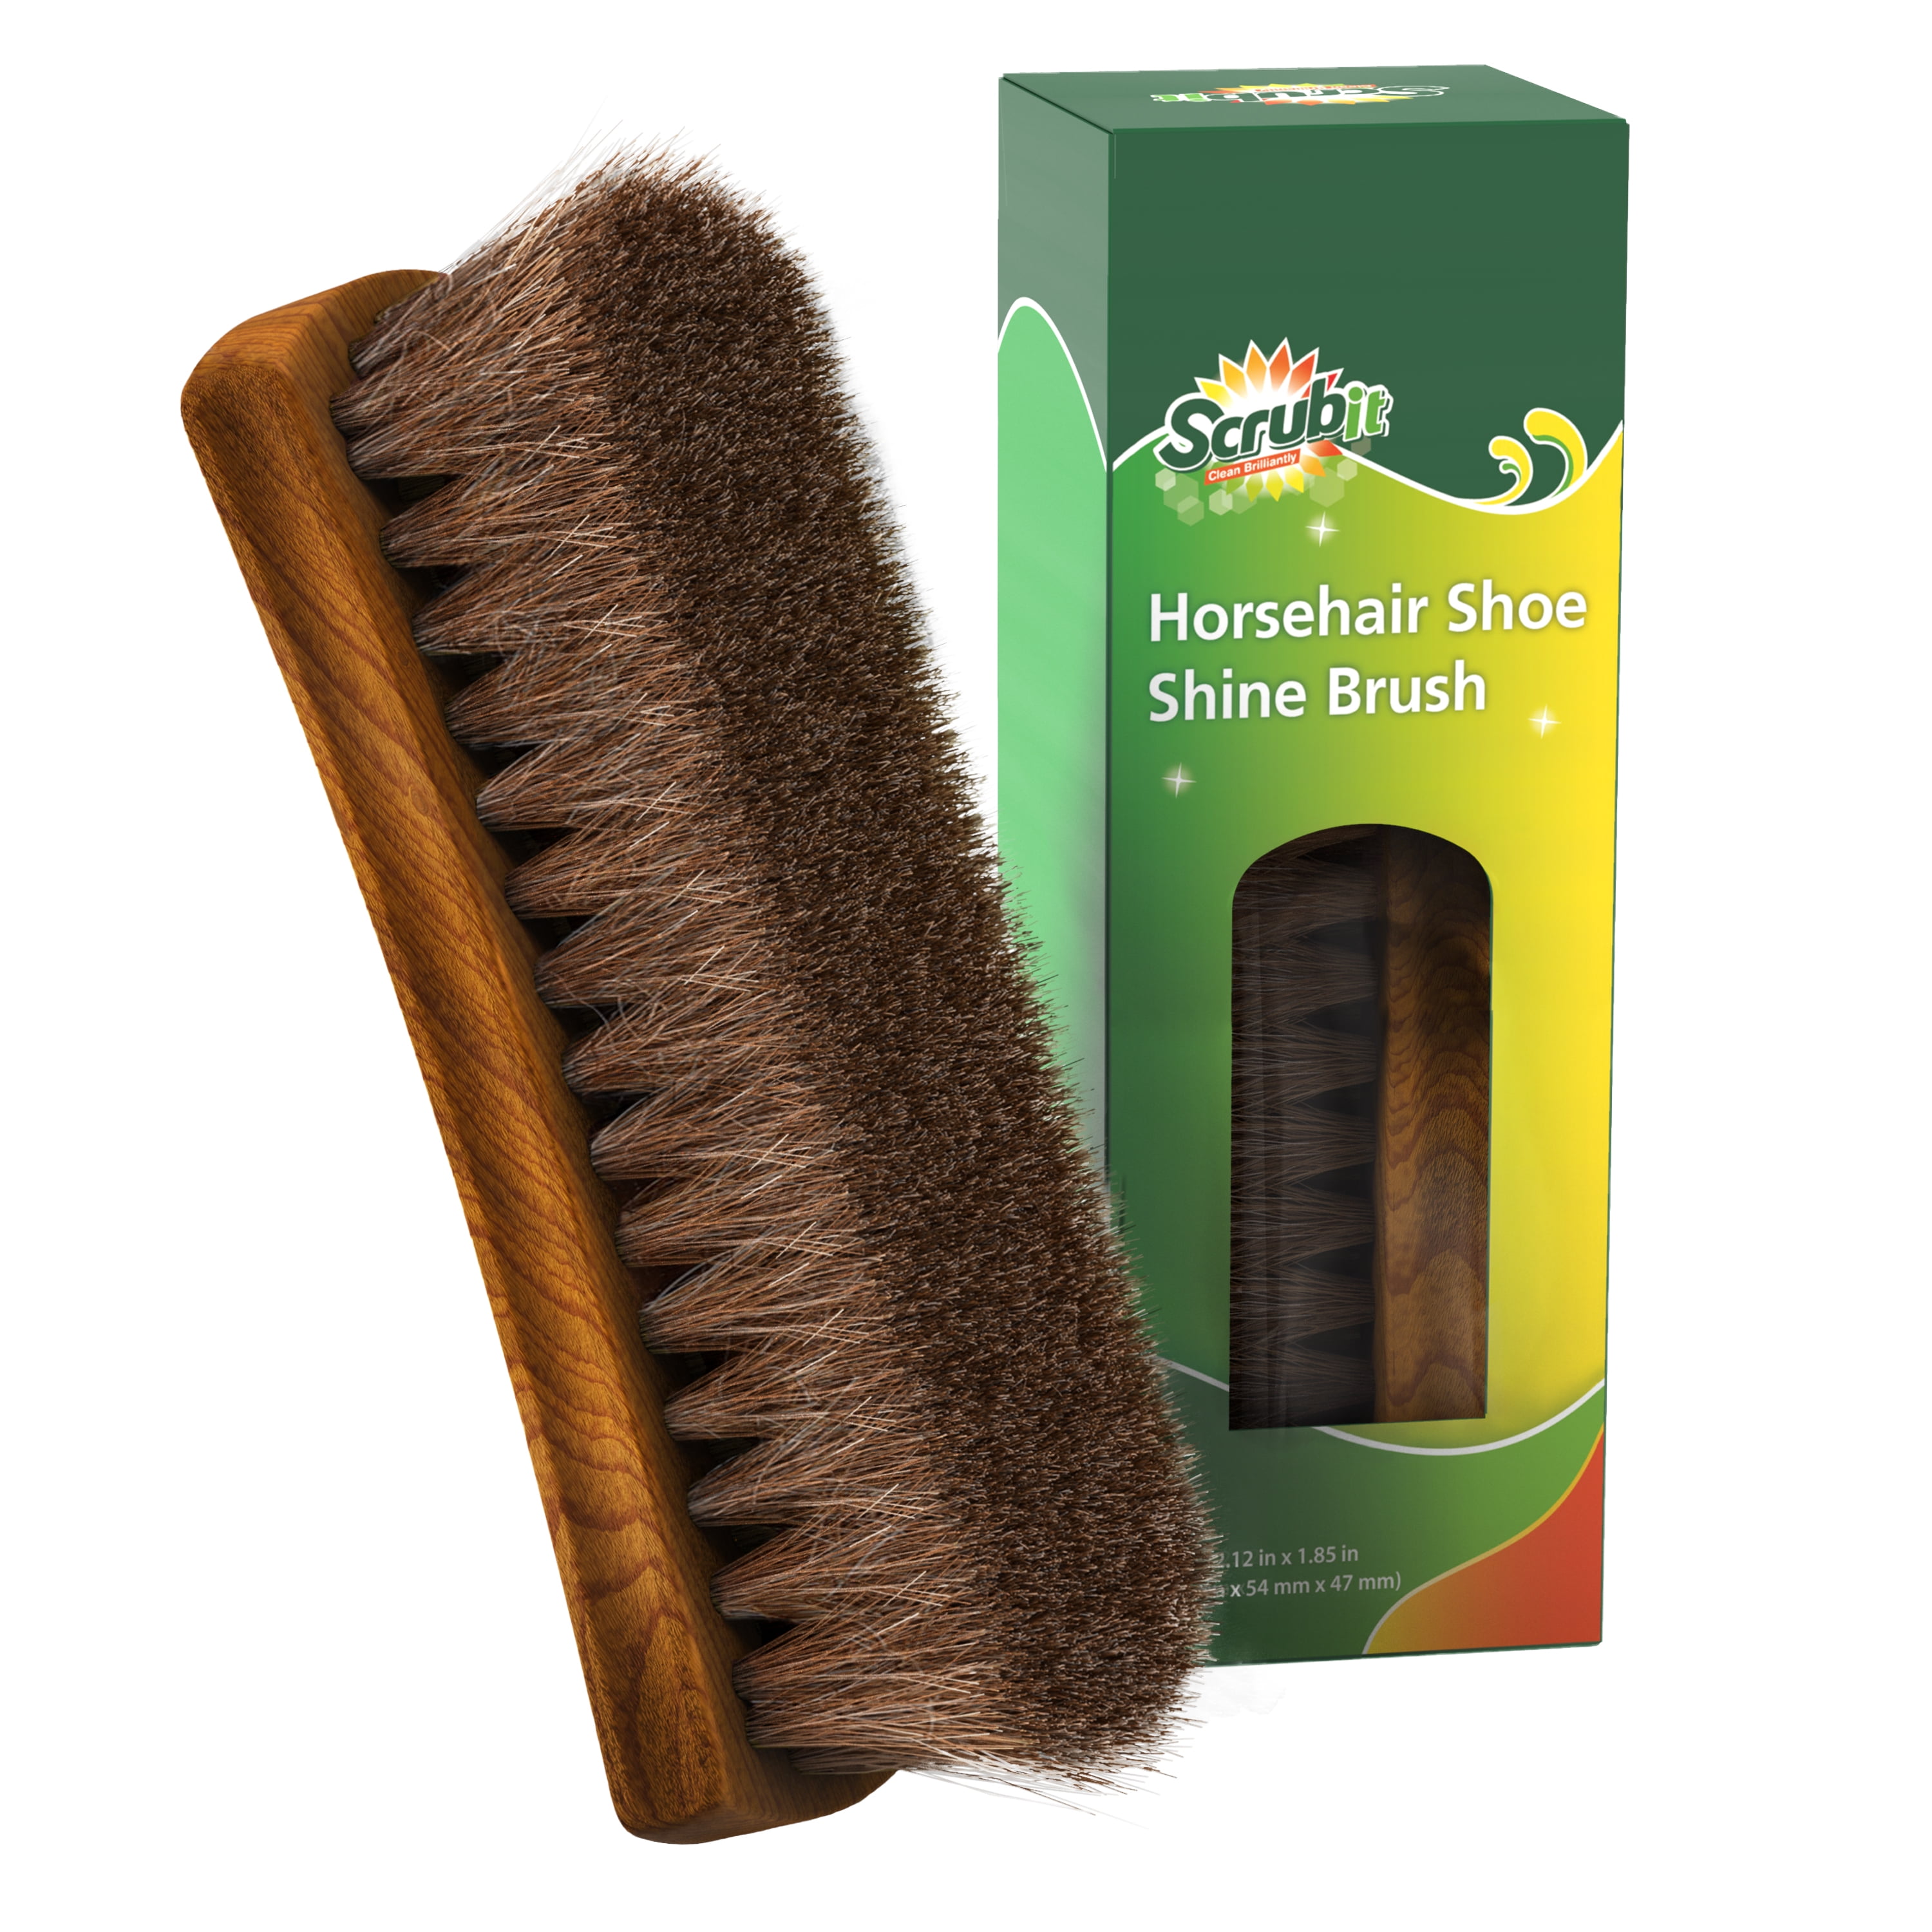 Dauber Shoe Shine Brush Black Horsehair Wood Handle 